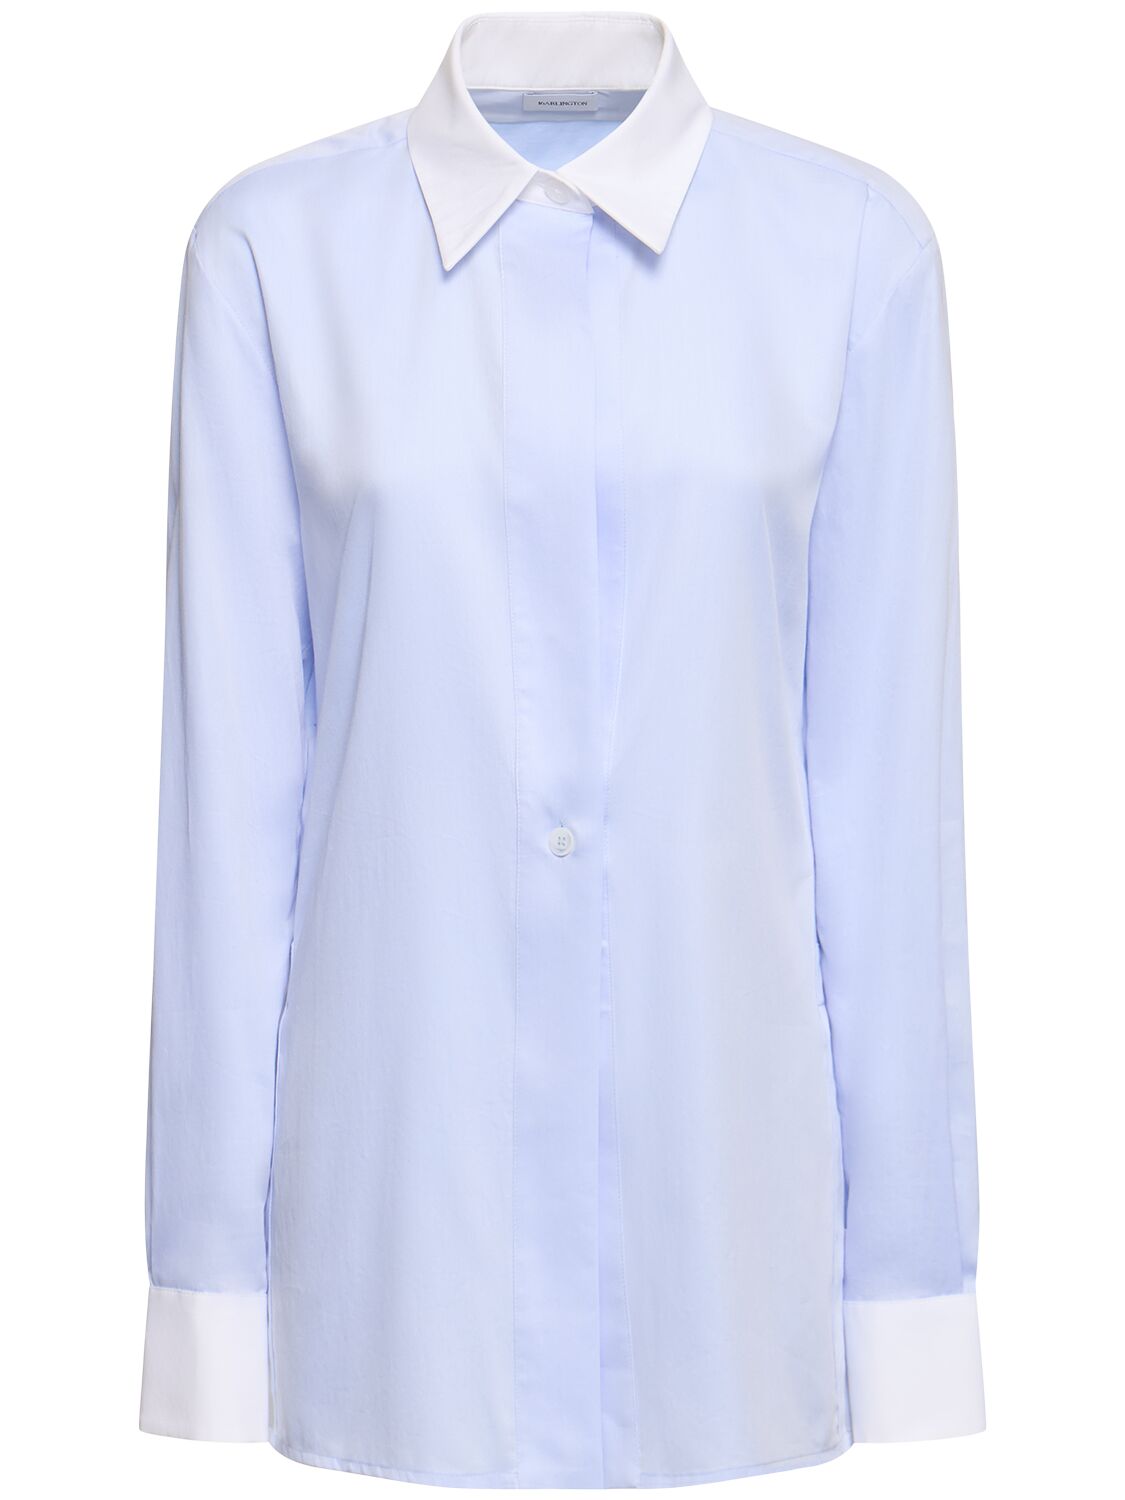 16arlington Teverdi Poplin Shirt In Light Blue,white